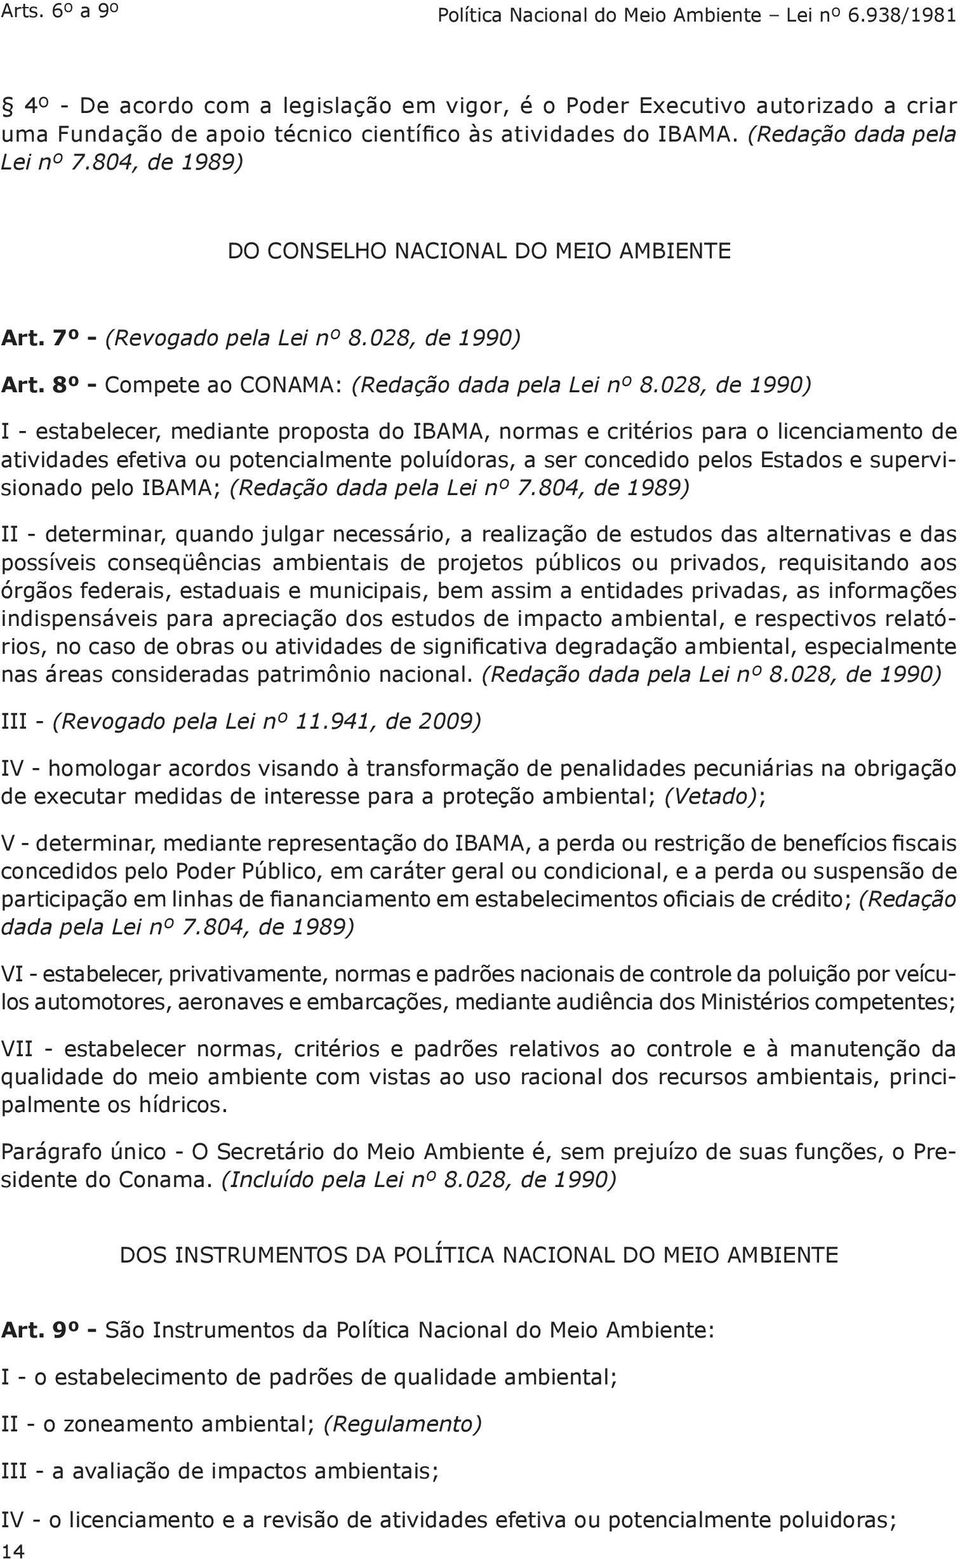 804, de 1989) DO CONSELHO NACIONAL DO MEIO AMBIENTE Art. 7º - (Revogado pela Lei nº 8.028, de 1990) Art. 8º - Compete ao CONAMA: (Redação dada pela Lei nº 8.